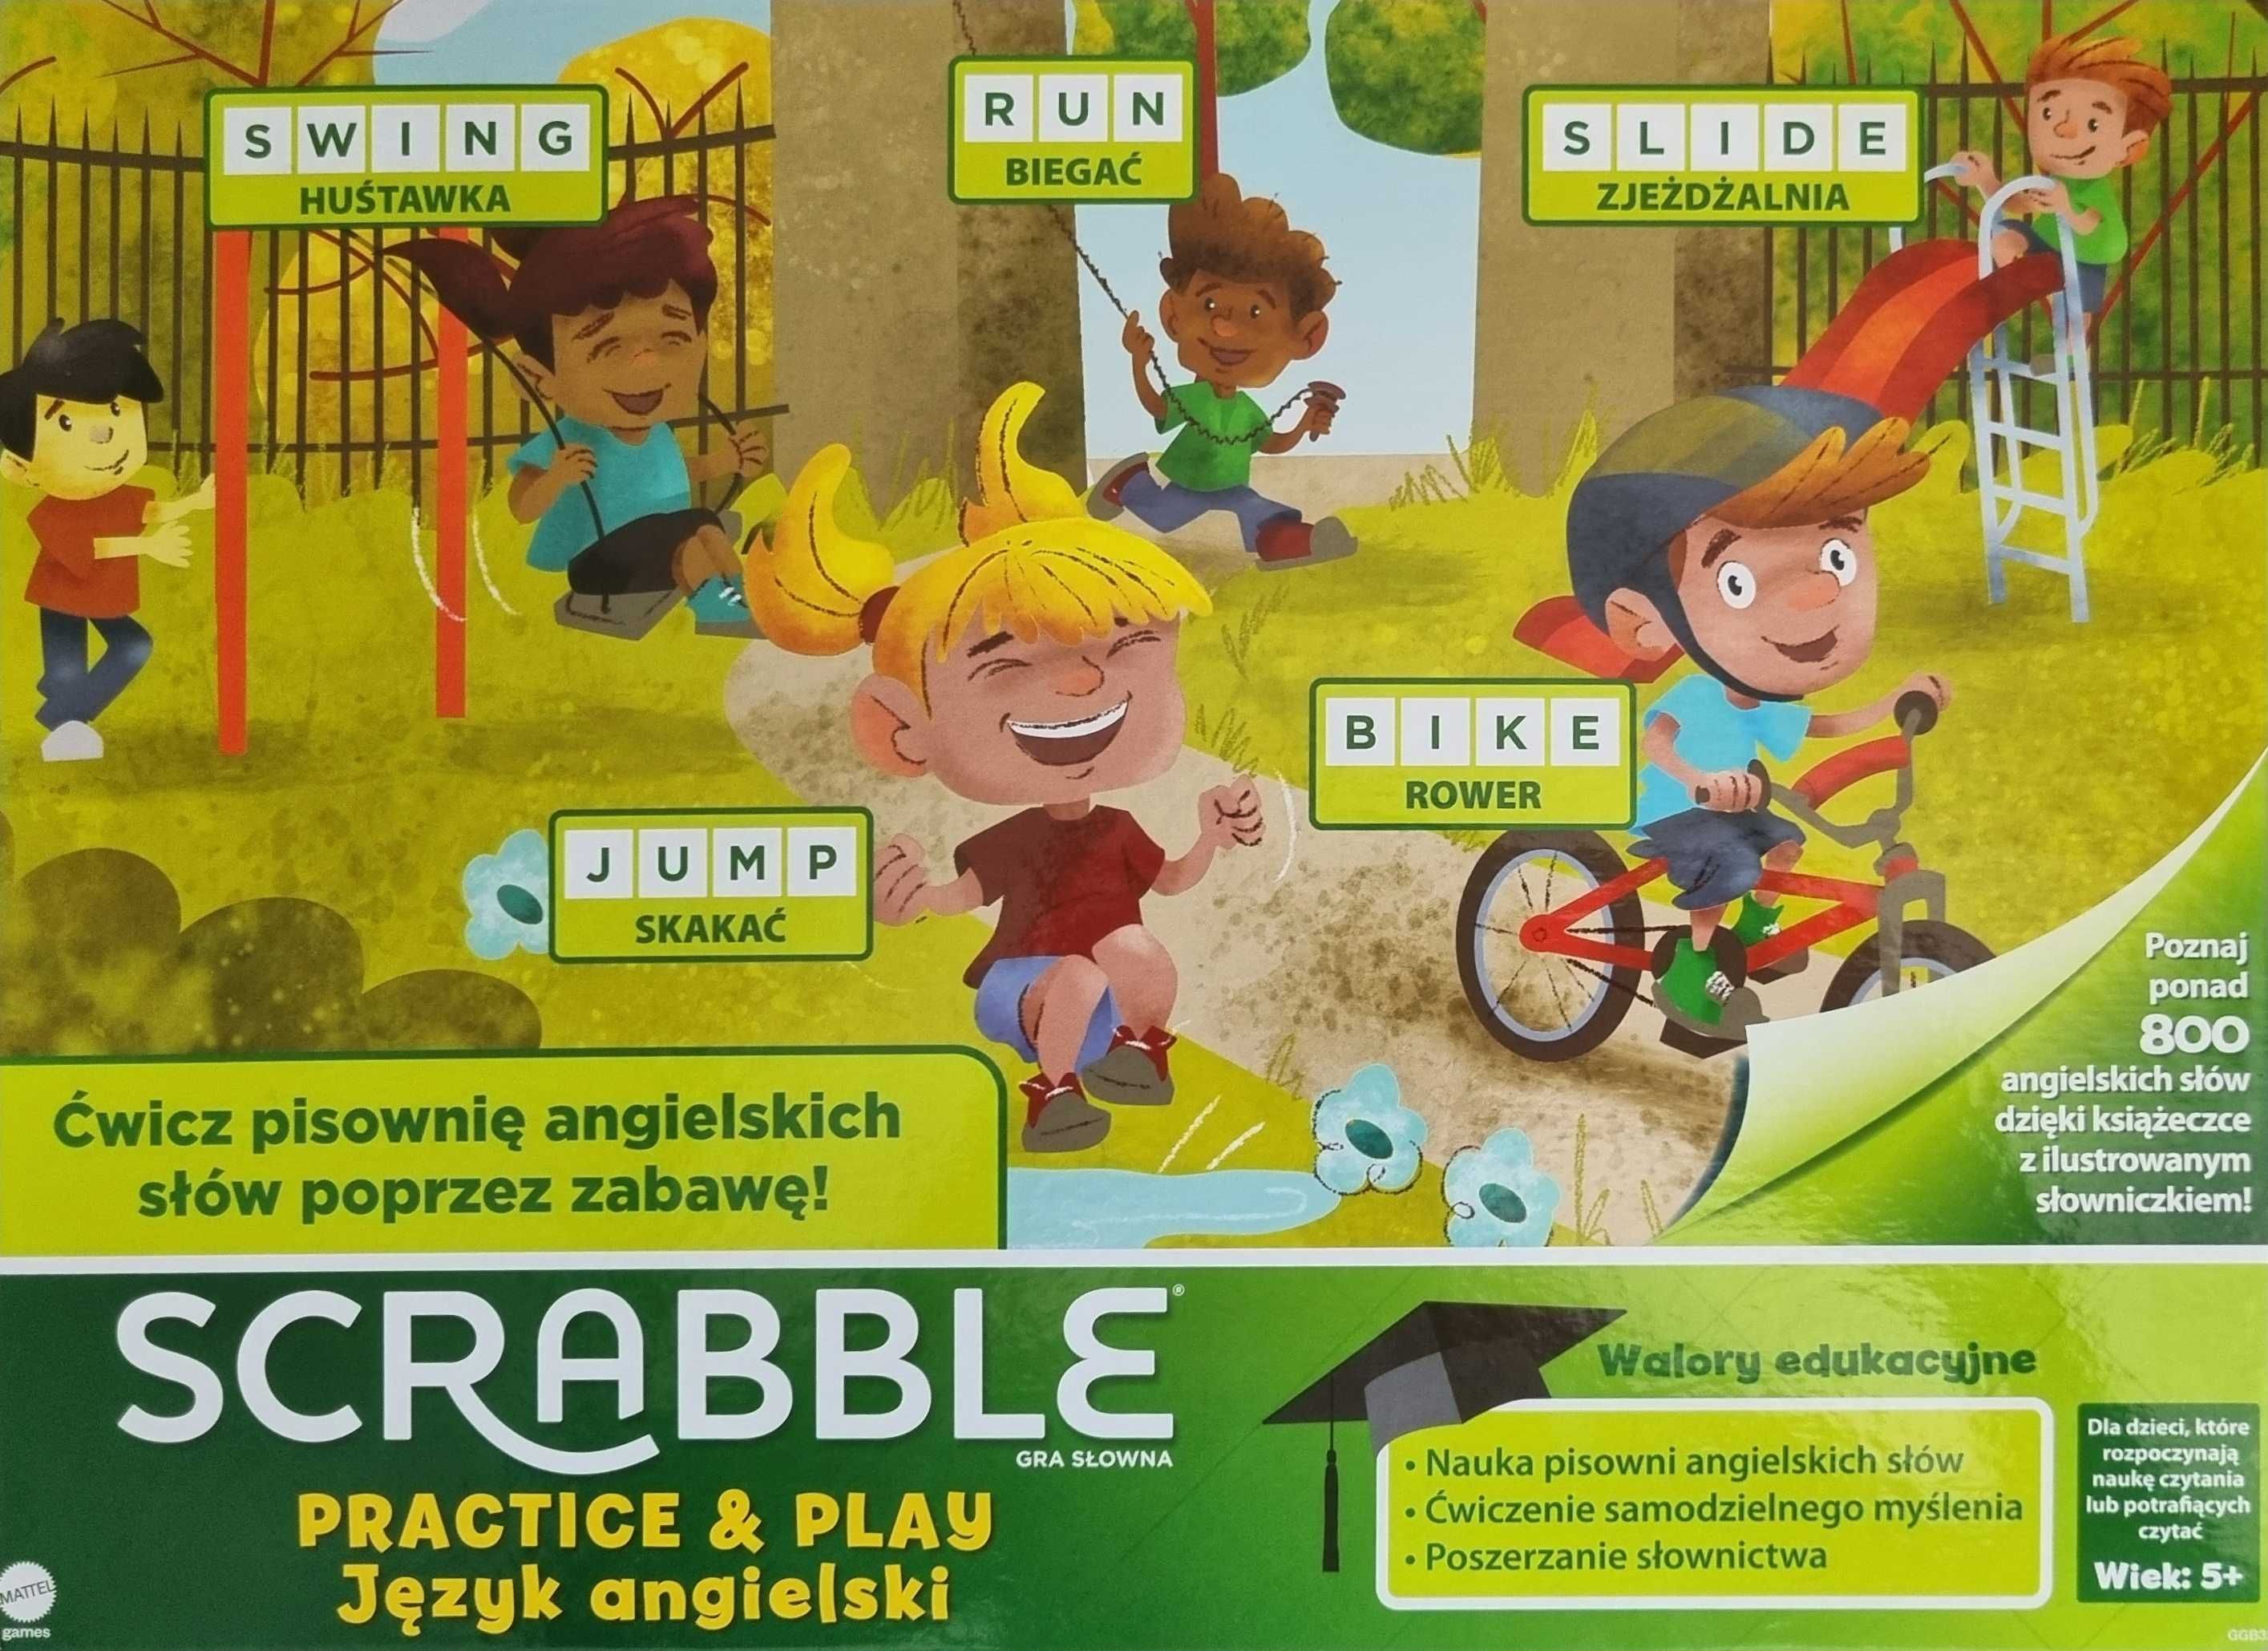 Scrabble Practice&Play +2 Gratisy! "Poznaj zawody"+Zwierzaki z FunPaki